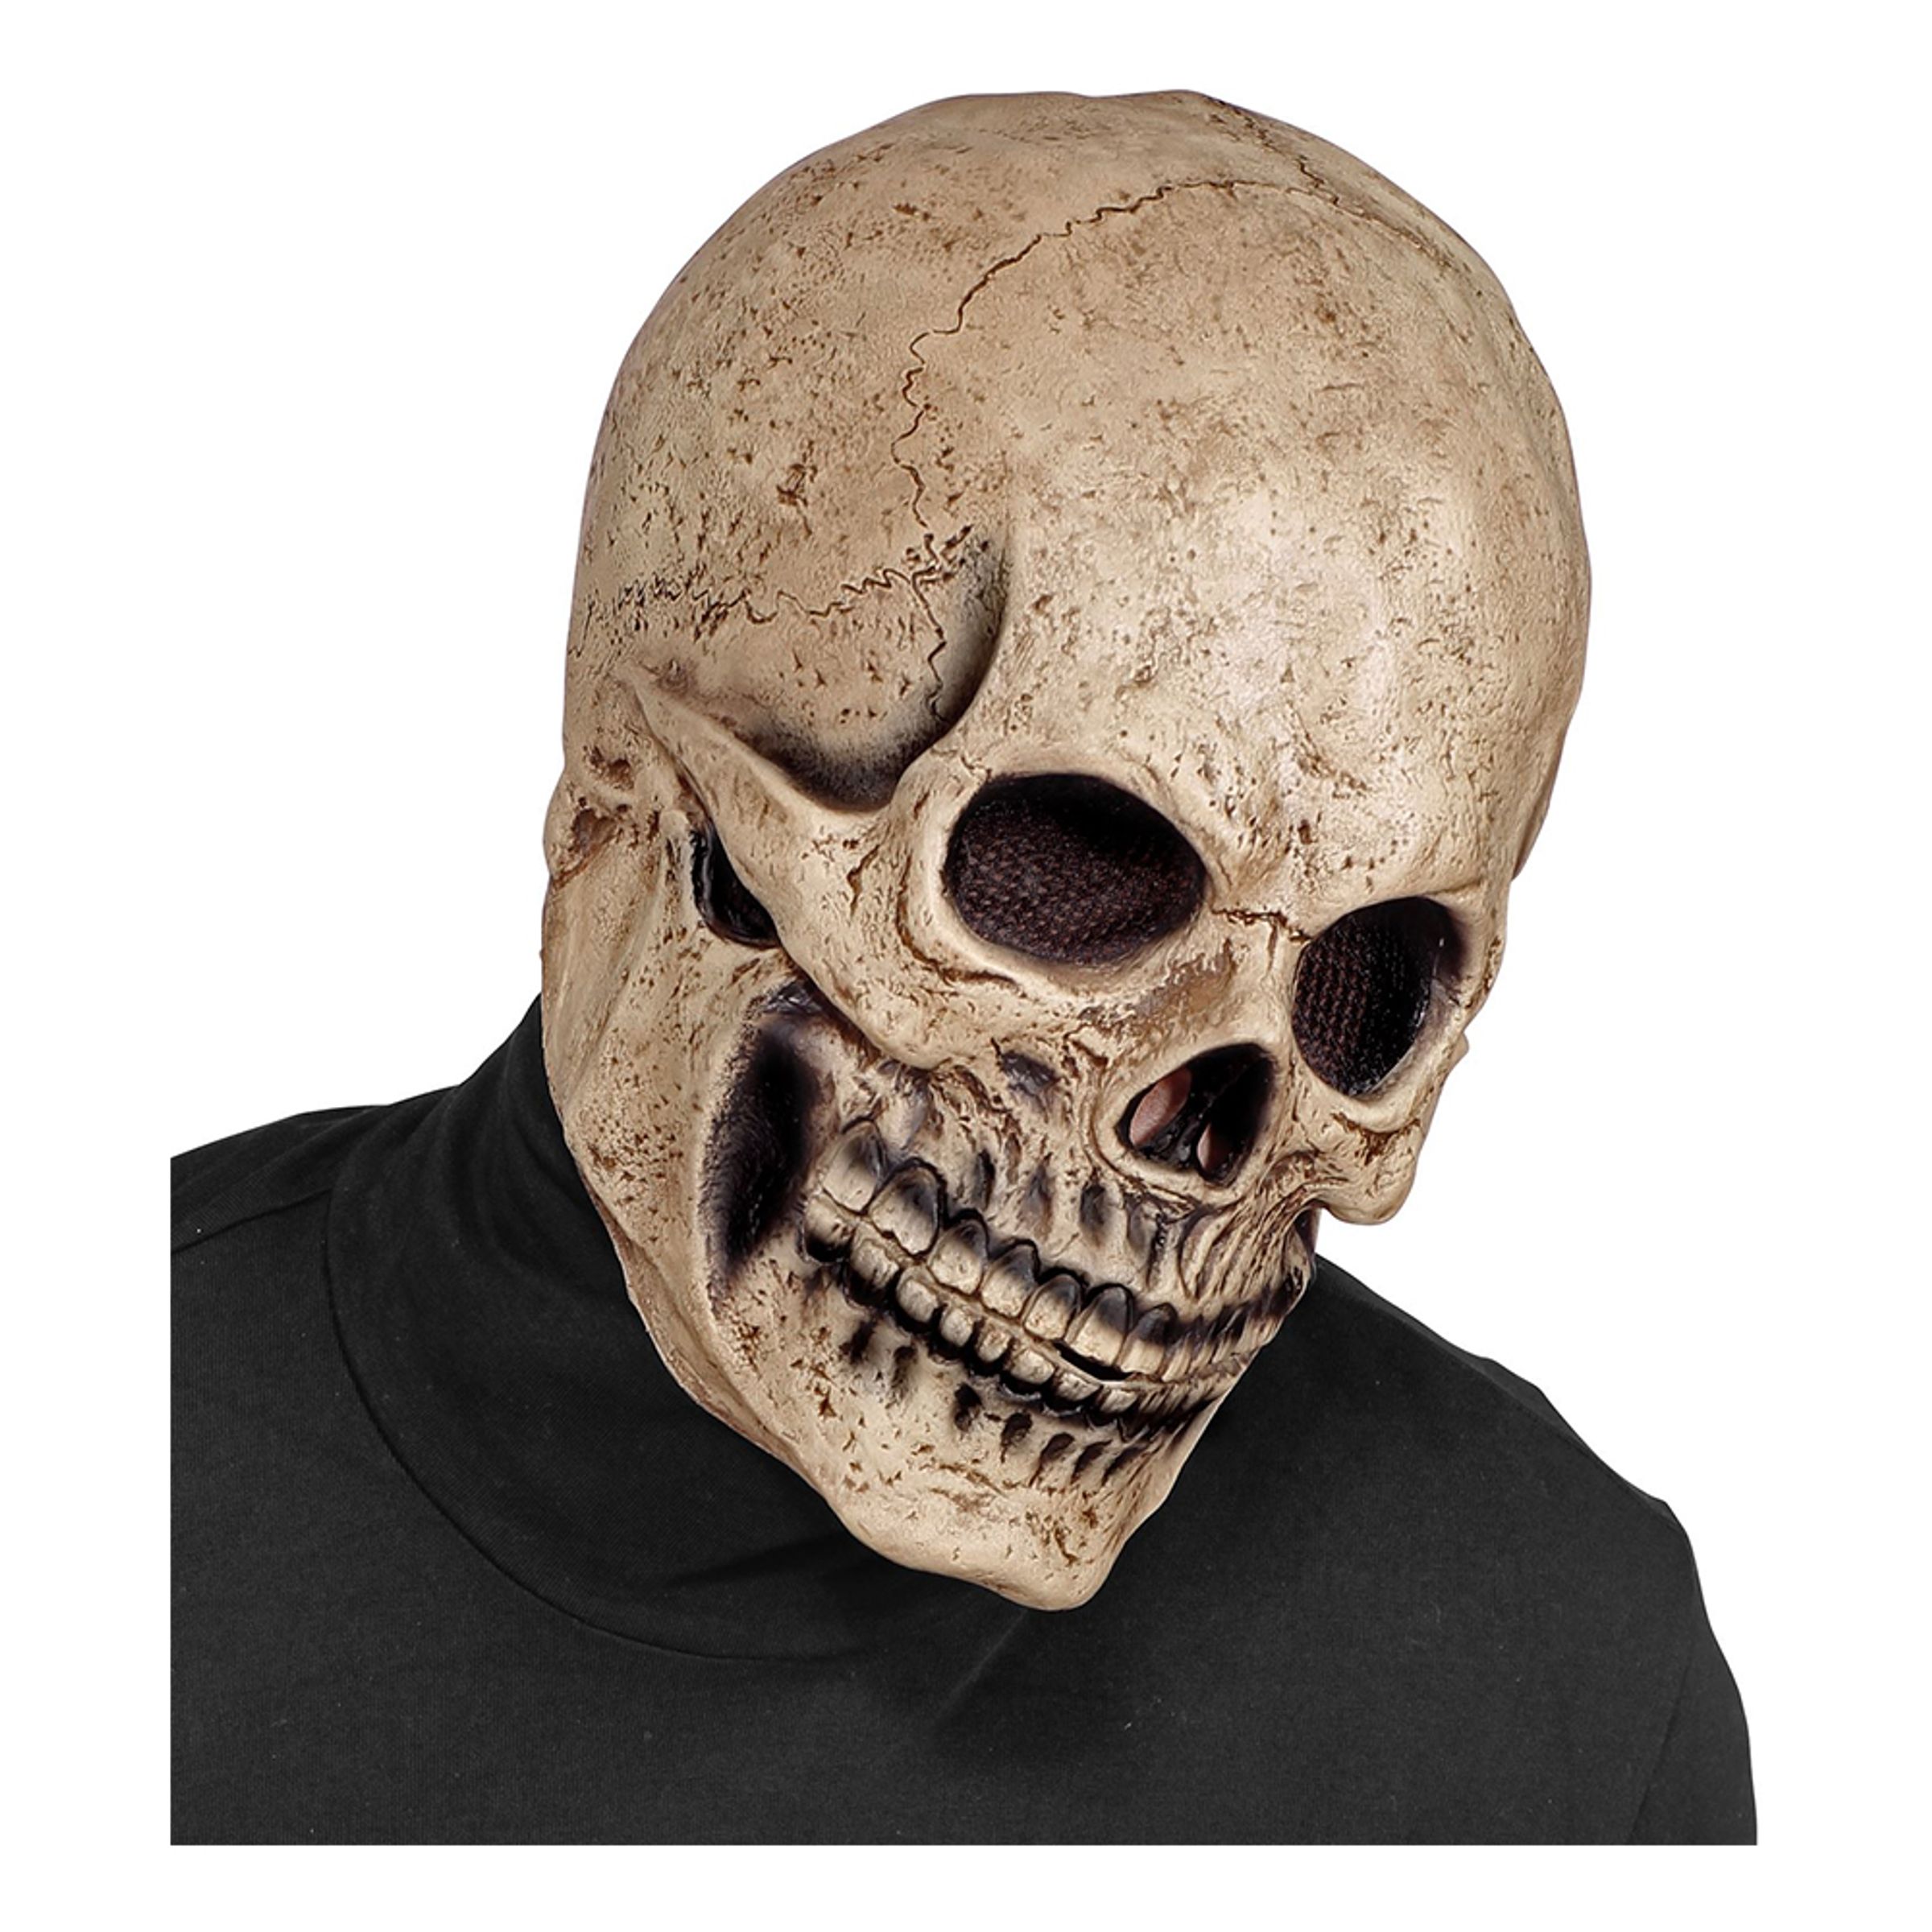 Dödskalle Budget Mask - One size